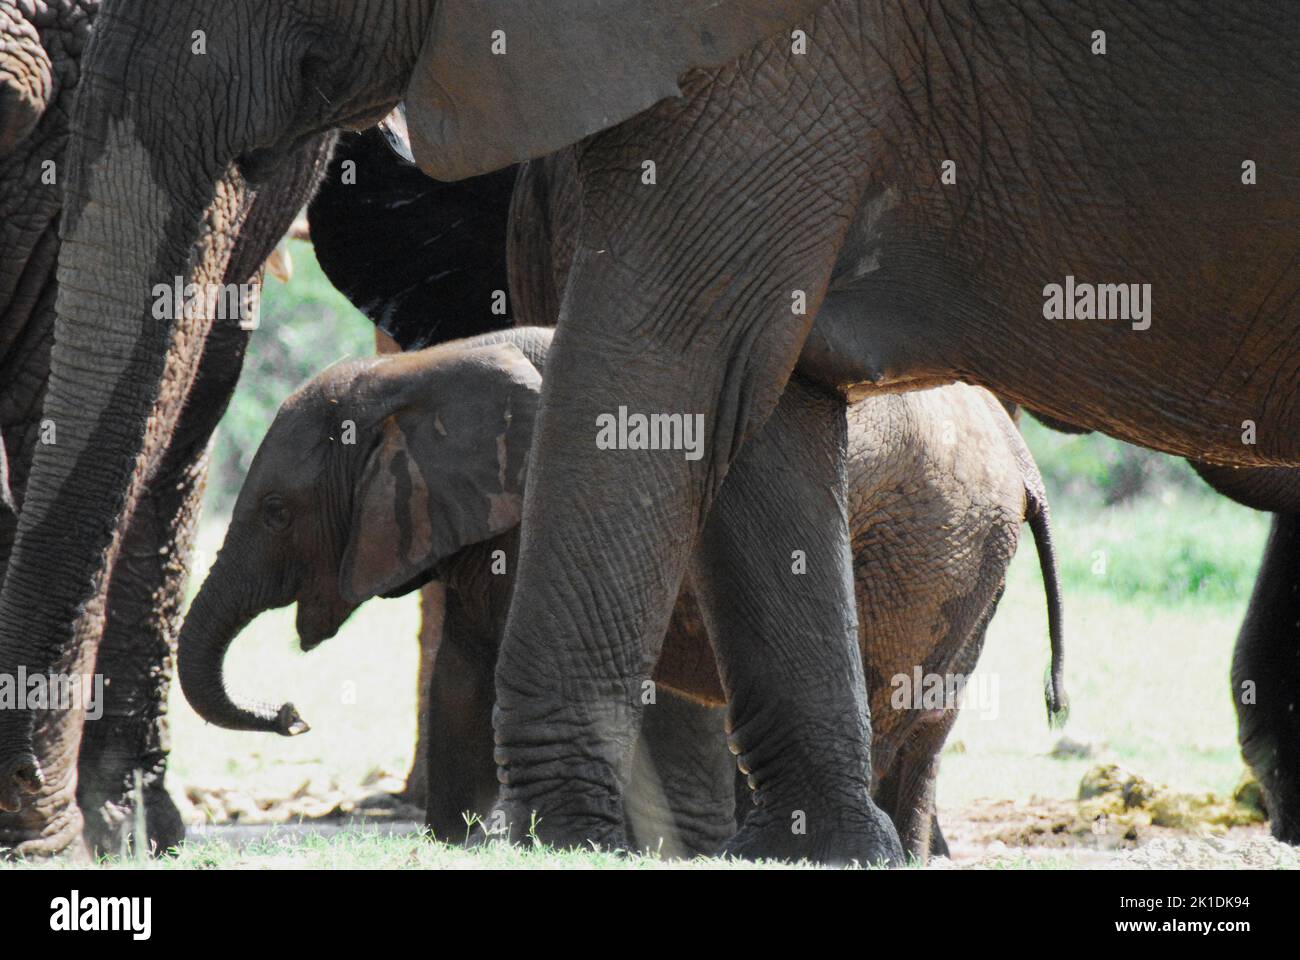 Afrique - gros plan d'une famille d'éléphants sauvages avec un jeune veau marchant entre leurs jambes. Tourné en safari en Afrique du Sud. Banque D'Images